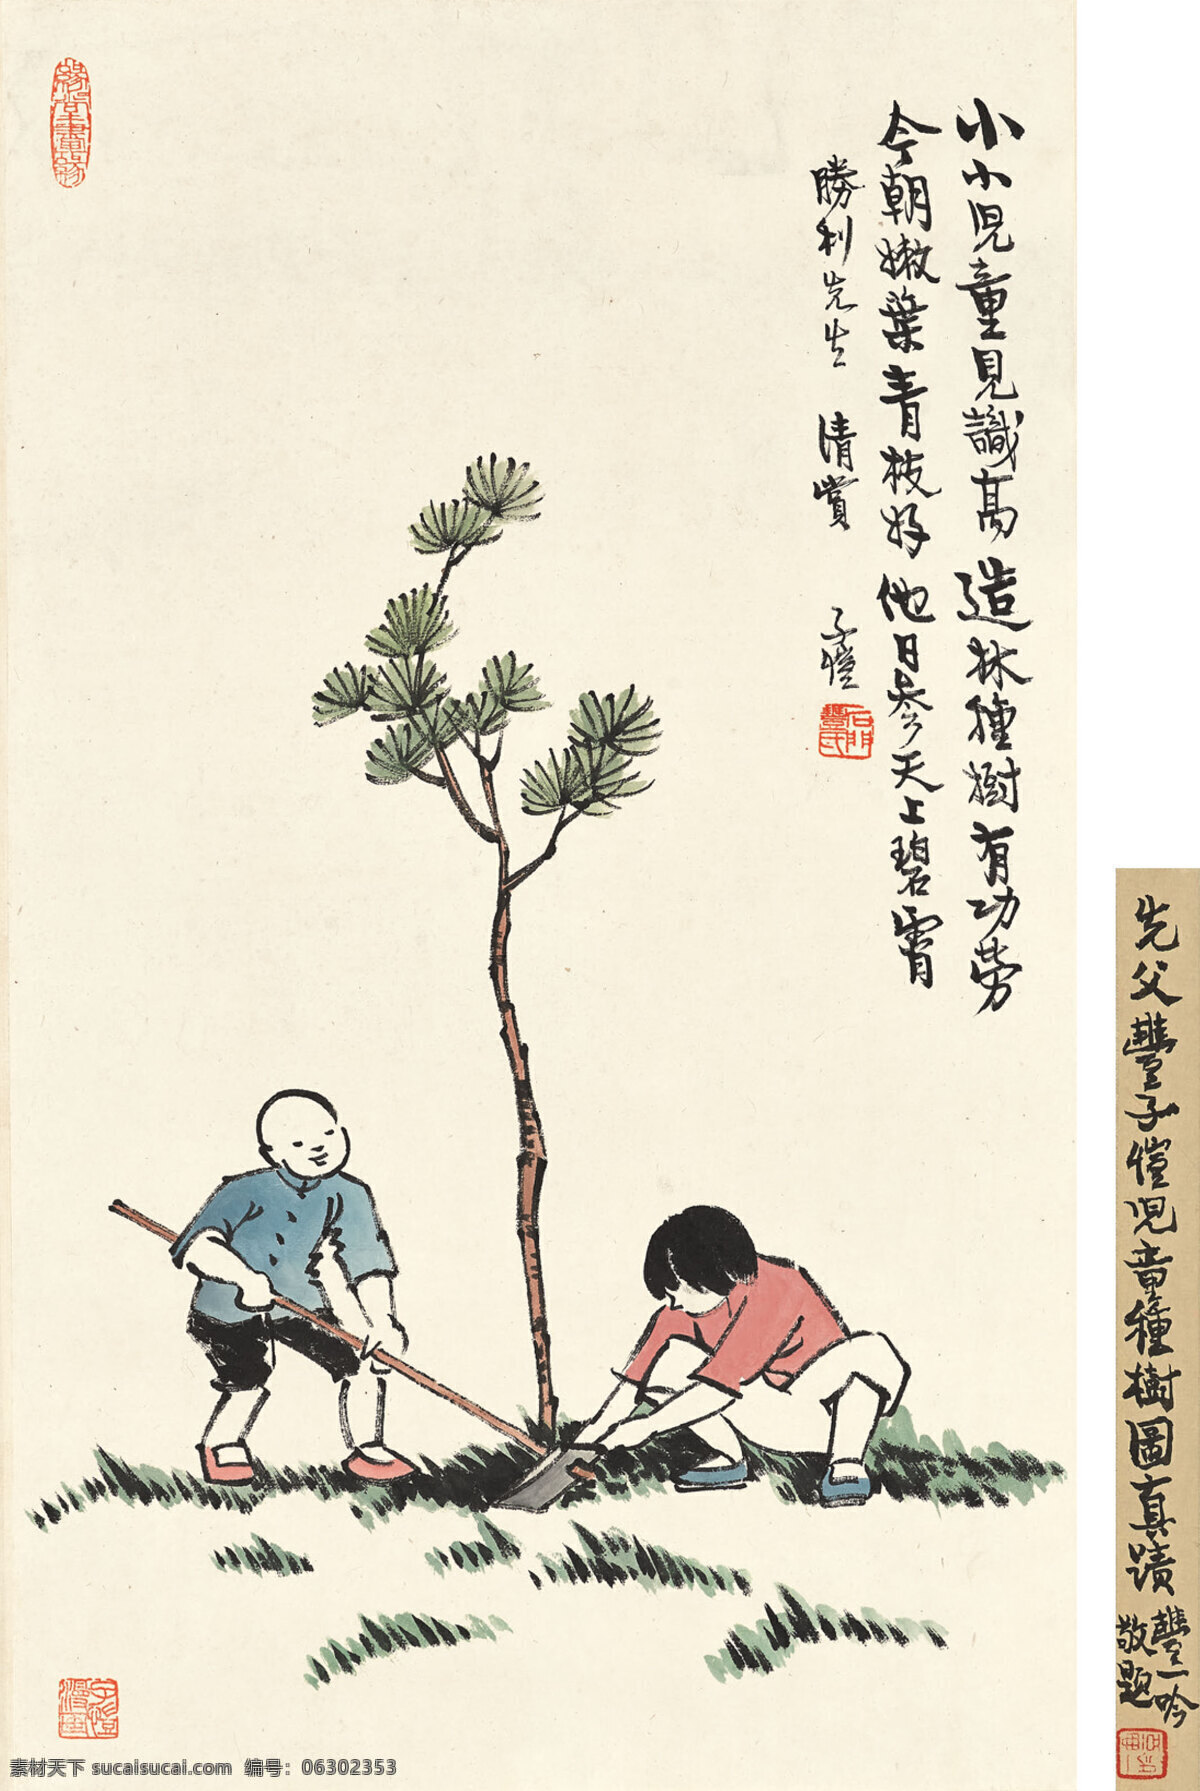 小小 儿童 见识 高 丰子恺作品 漫画大师 两位少年 植树 中国古代画 中国古画 文化艺术 绘画书法